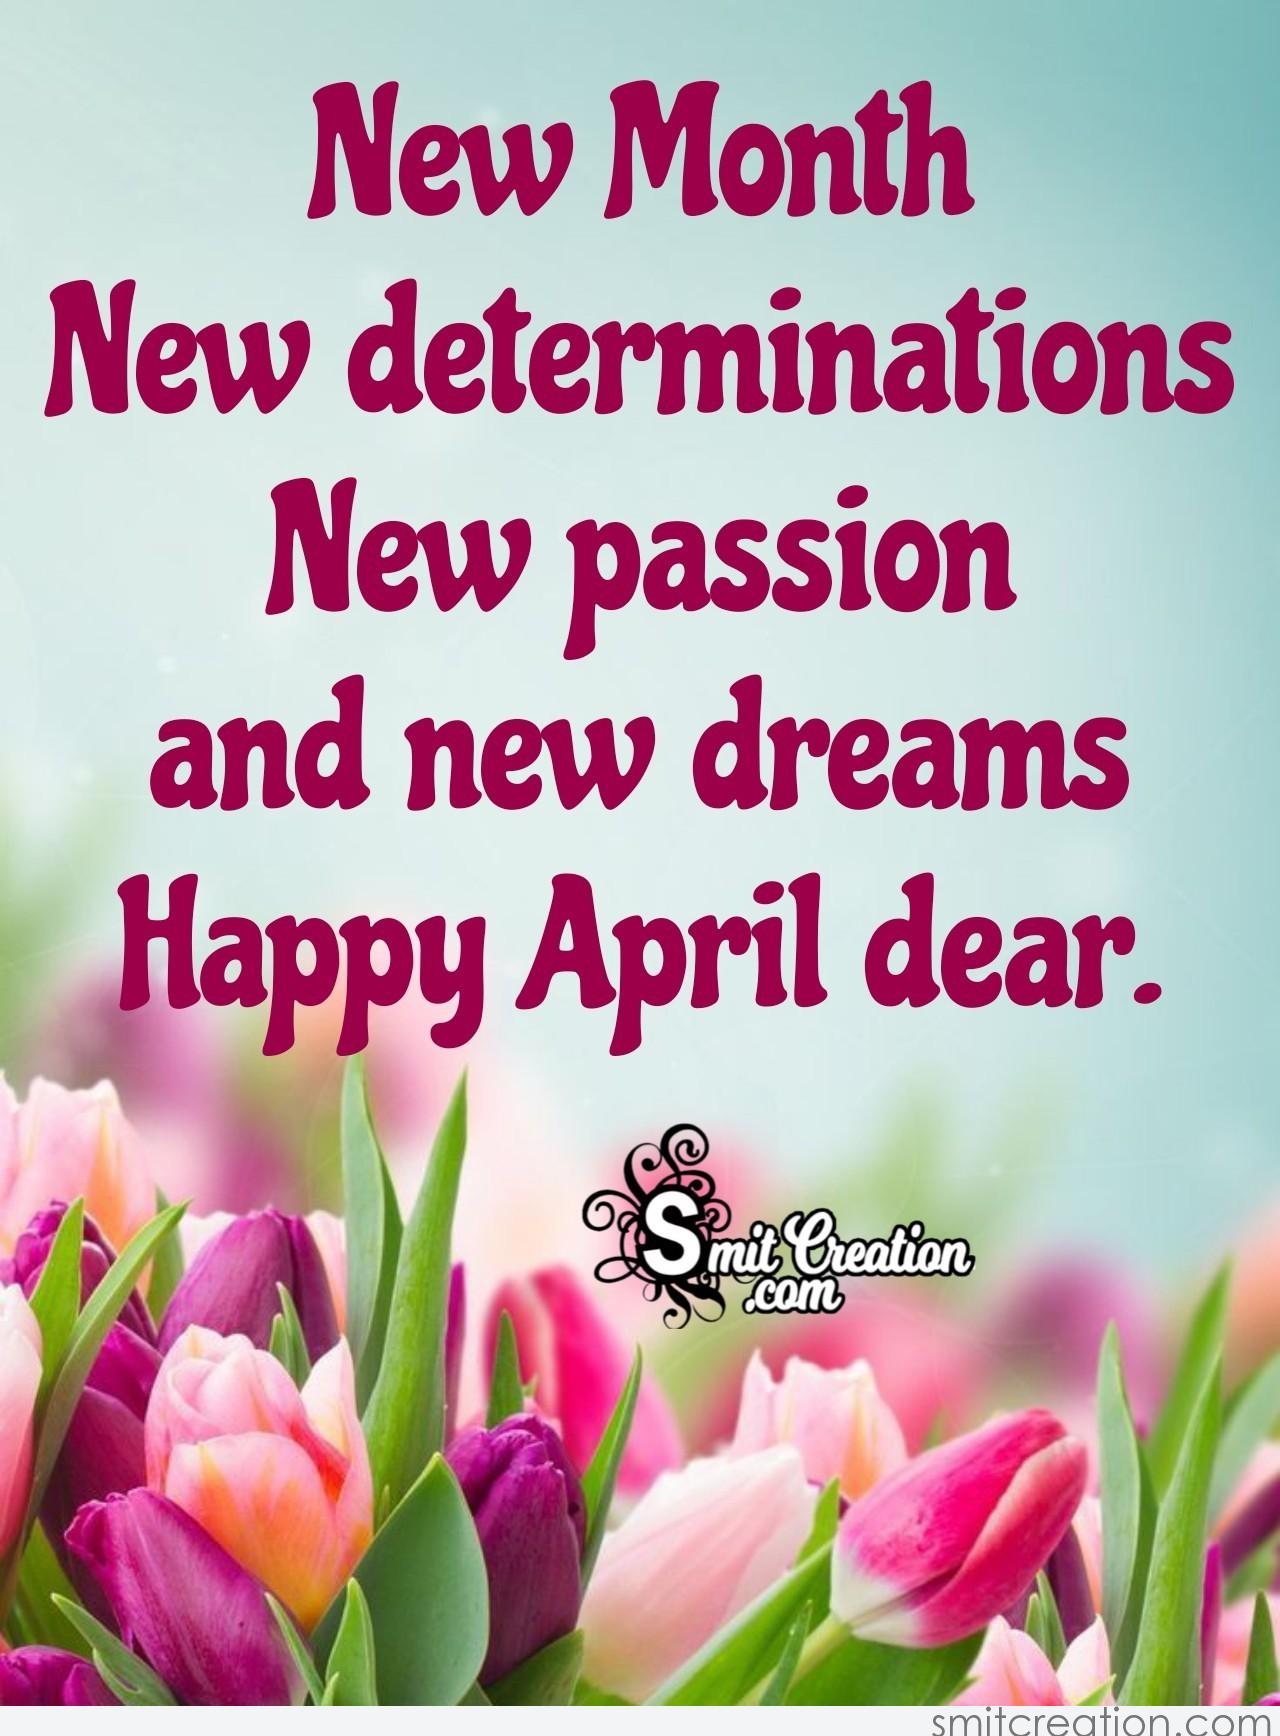 Happy April Dear - SmitCreation.com